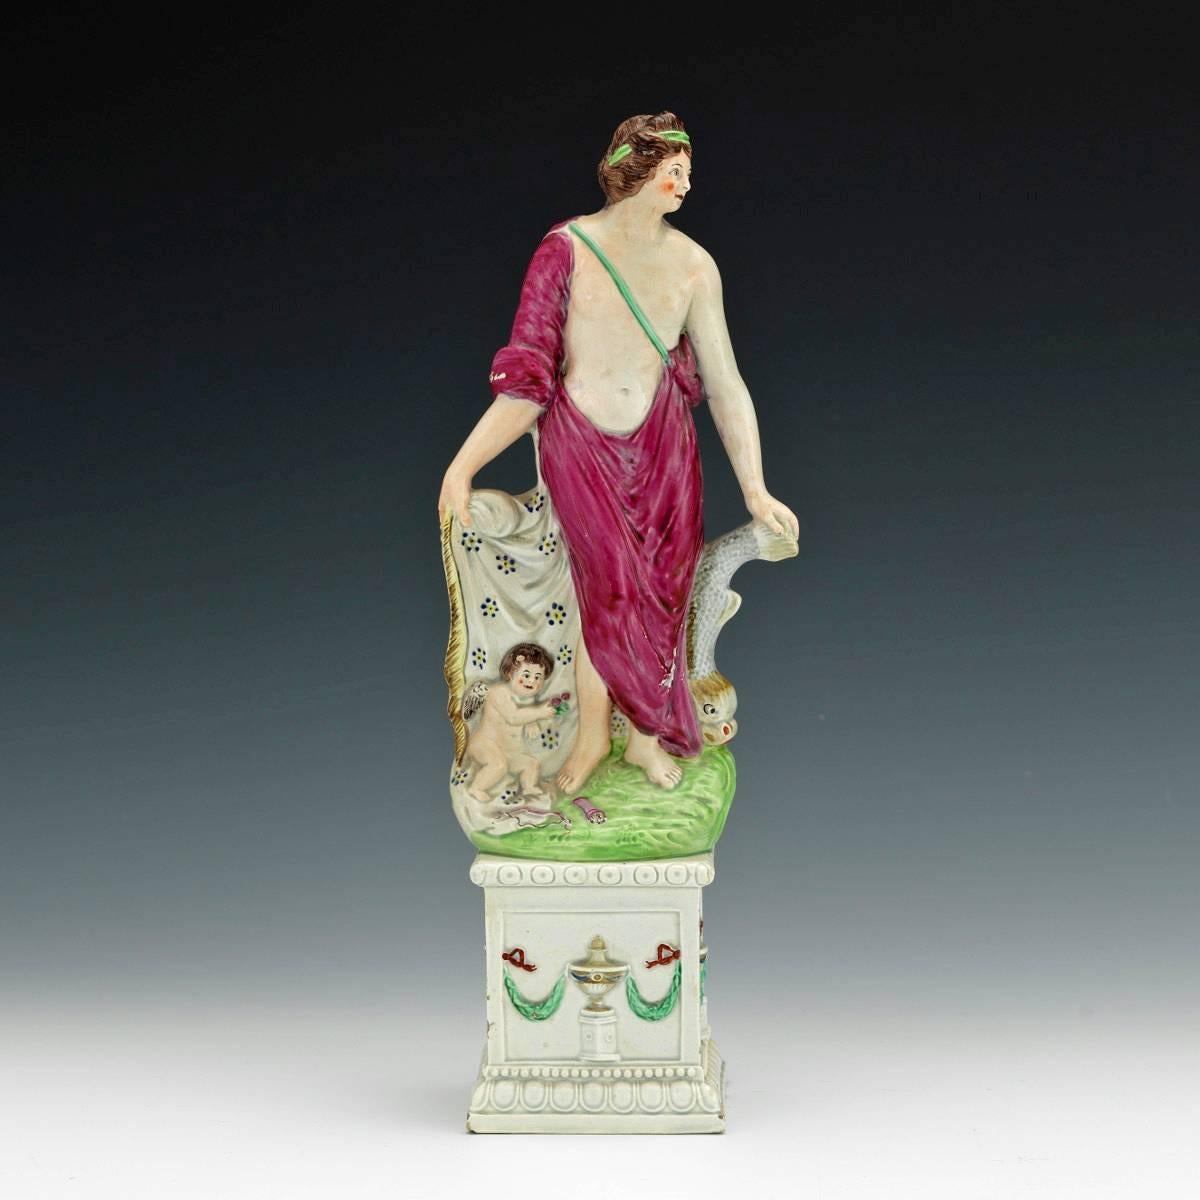 Grande figura in perle di Afrodite ed Eros, figura di 'Venere e Cupido' attribuita a Neale & Co,
1790 circa.

La grande figura di Venere o Afrodite in perle inglesi poggia la mano sinistra su un delfino e la mano destra tiene la parte aperta